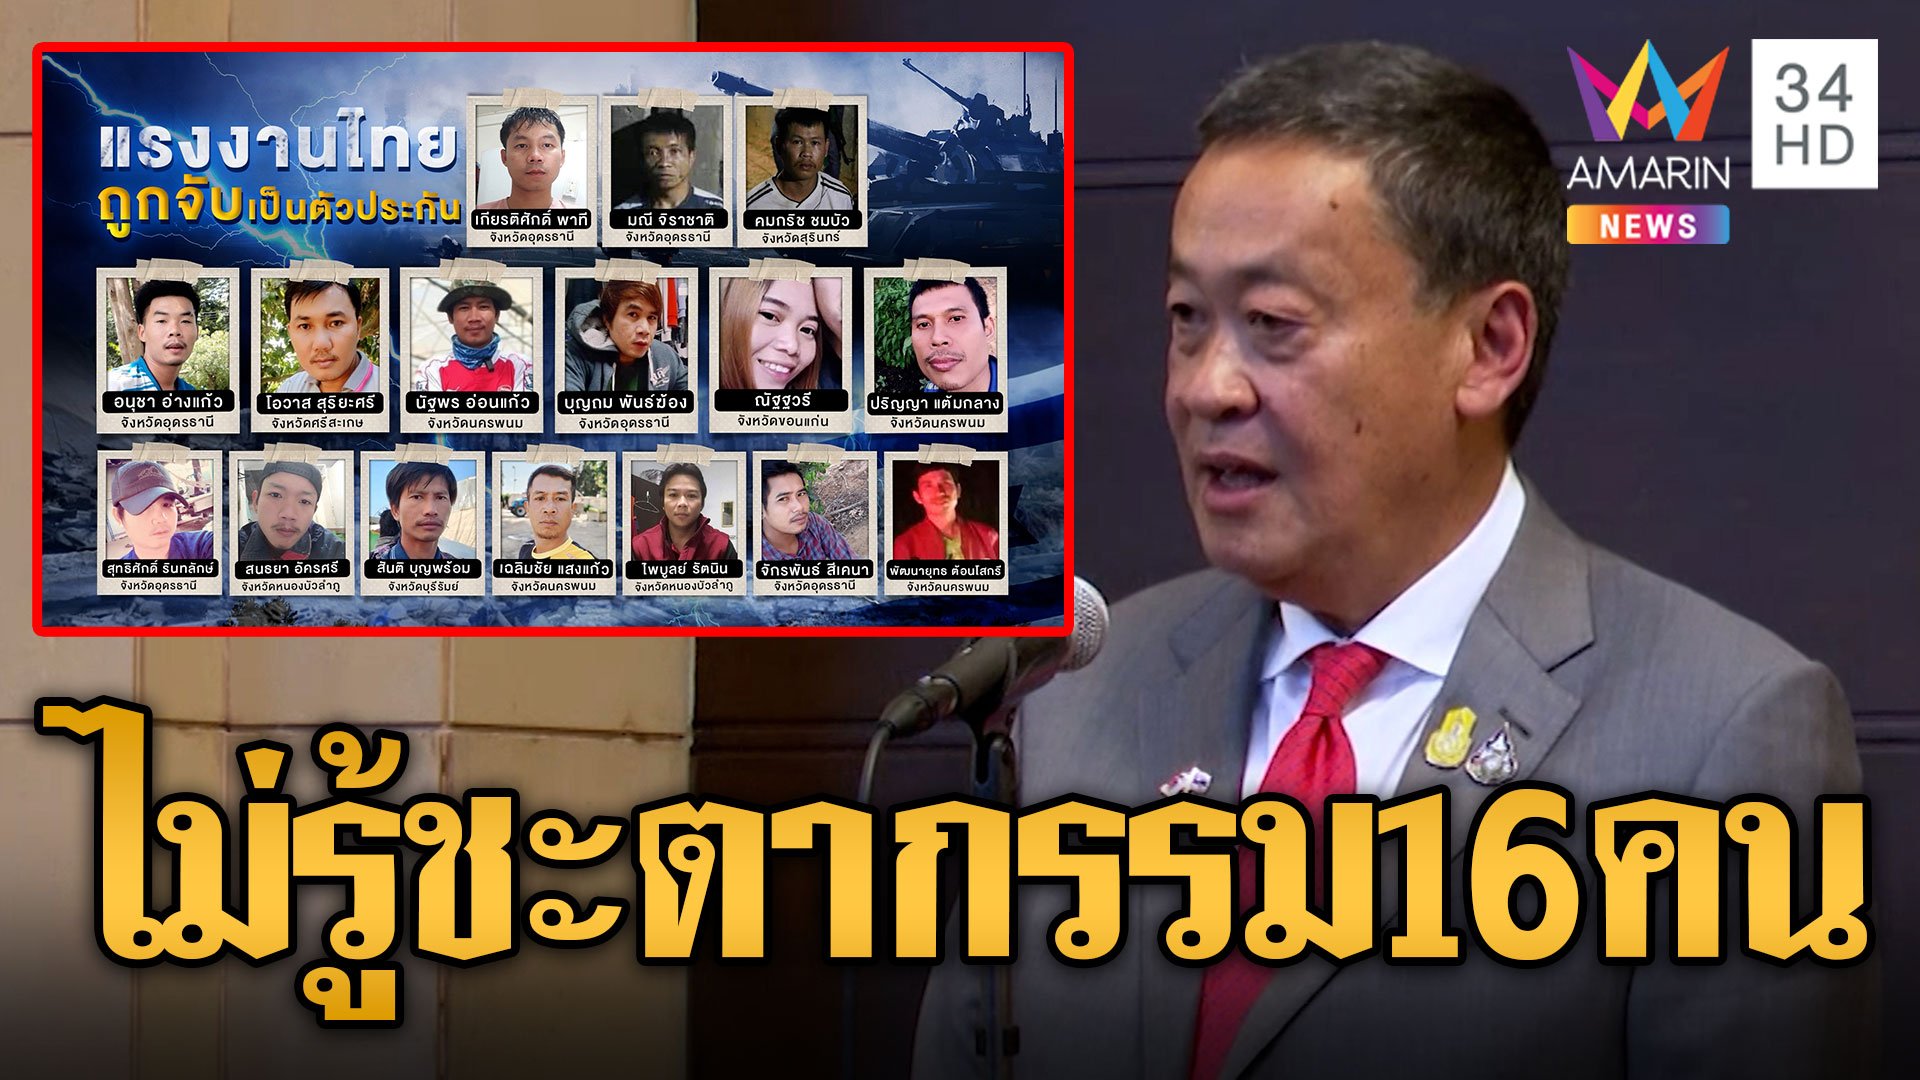 ยังไม่รู้ชะตากรรม 16 ชีวิตคนไทยถูกจับเป็นตัวประกัน เร่งเจรจาทูตอิราเอลช่วยชีวิต | ข่าวอรุณอมรินทร์ | 13 ต.ค. 66 | AMARIN TVHD34